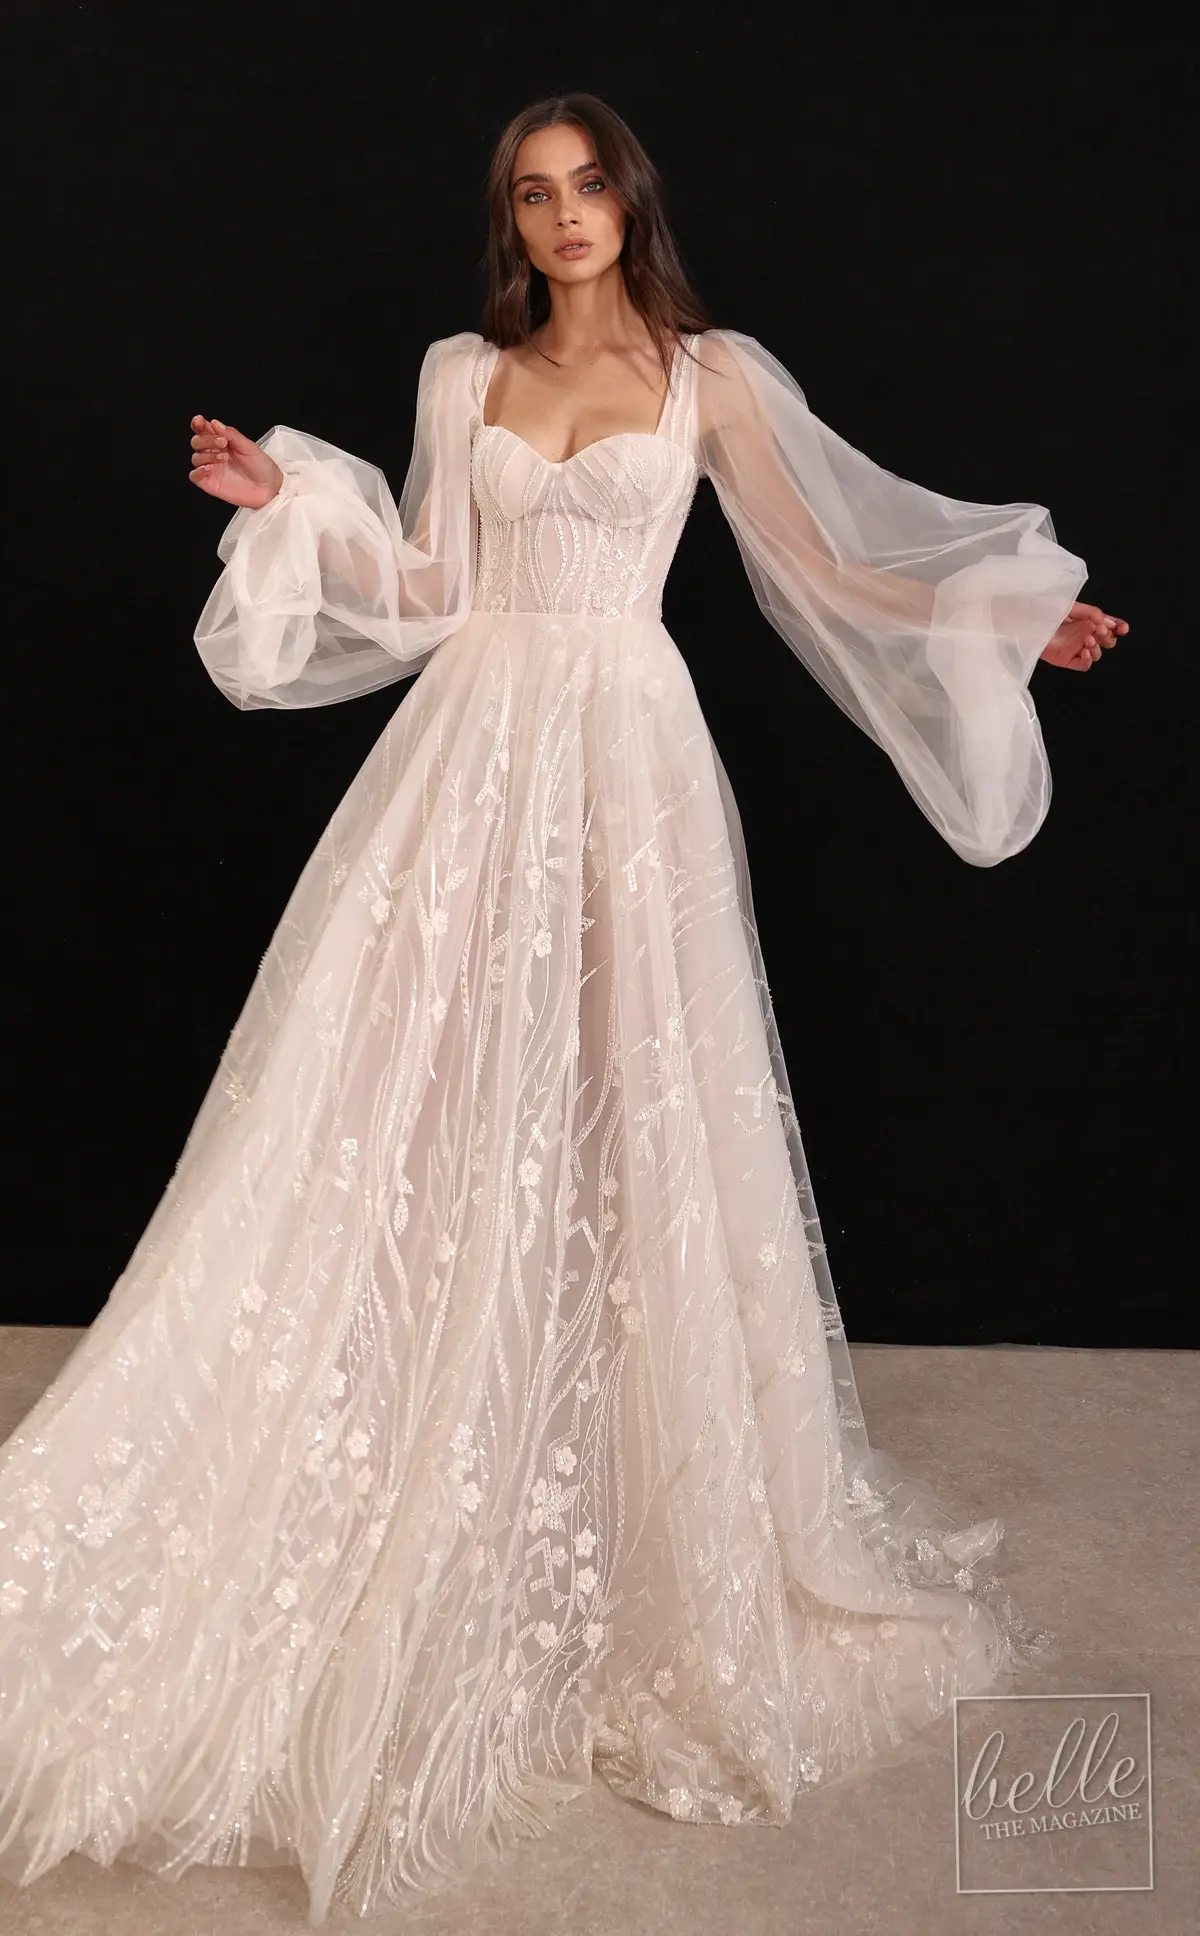 Wedding dress trends 2021 - Puff Sleeves - GALIA LAHAV Indie